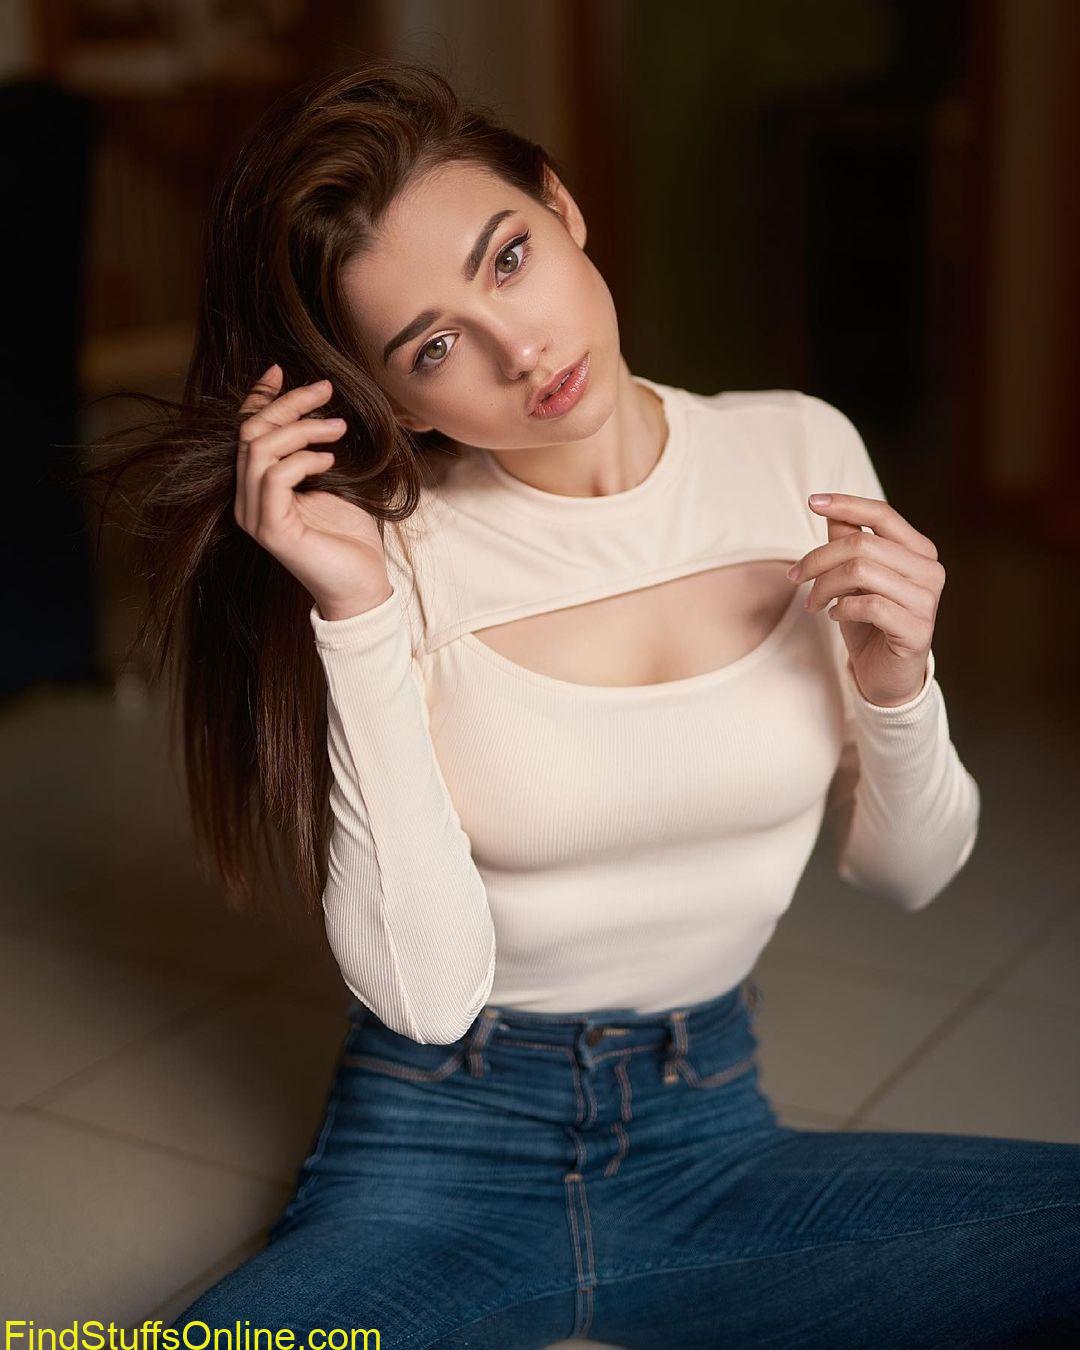 instagram model Sophie hot pictures 8